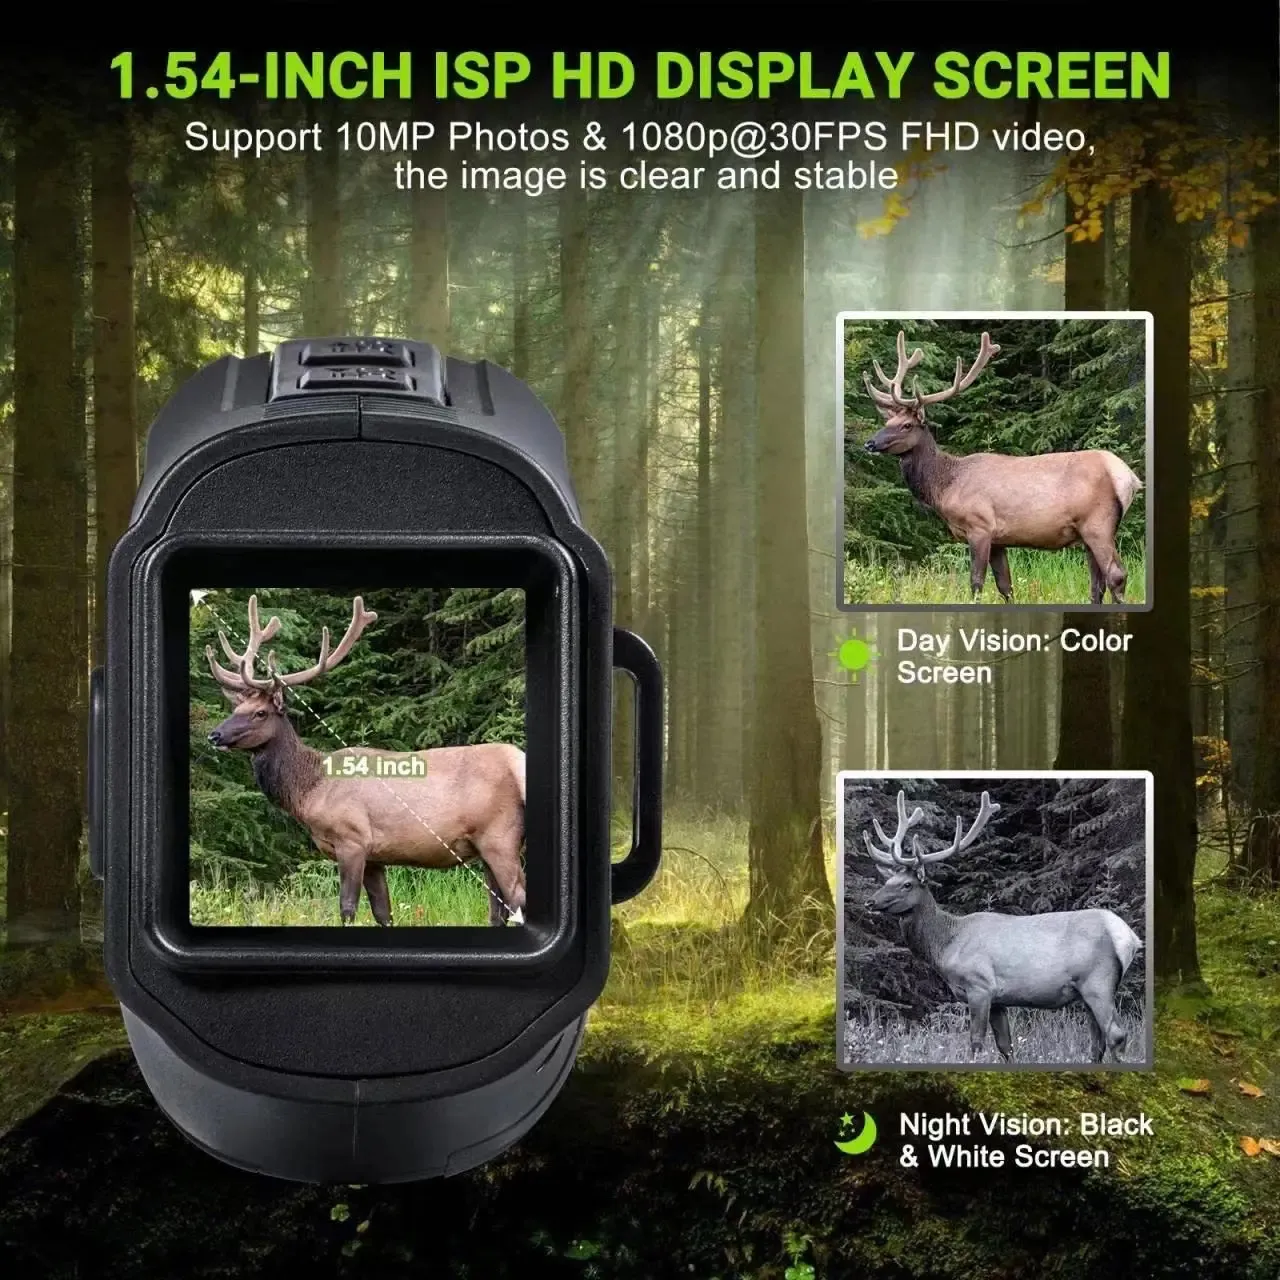 Vision nocturne Caméra infrarouge monoculaire Enregistre la chasse